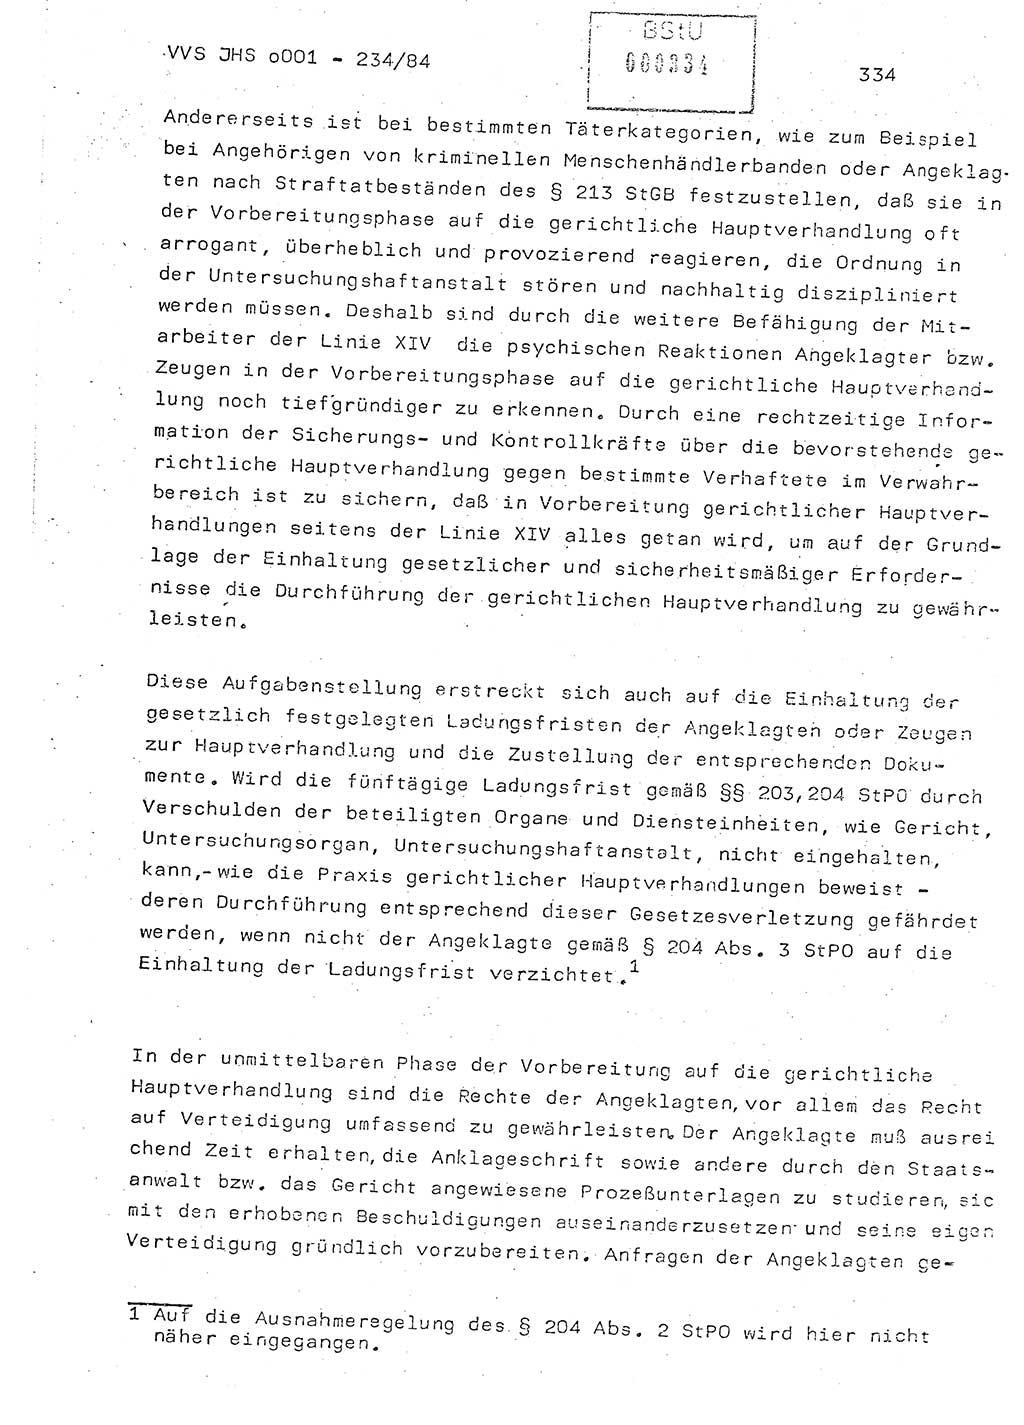 Dissertation Oberst Siegfried Rataizick (Abt. ⅩⅣ), Oberstleutnant Volkmar Heinz (Abt. ⅩⅣ), Oberstleutnant Werner Stein (HA Ⅸ), Hauptmann Heinz Conrad (JHS), Ministerium für Staatssicherheit (MfS) [Deutsche Demokratische Republik (DDR)], Juristische Hochschule (JHS), Vertrauliche Verschlußsache (VVS) o001-234/84, Potsdam 1984, Seite 334 (Diss. MfS DDR JHS VVS o001-234/84 1984, S. 334)